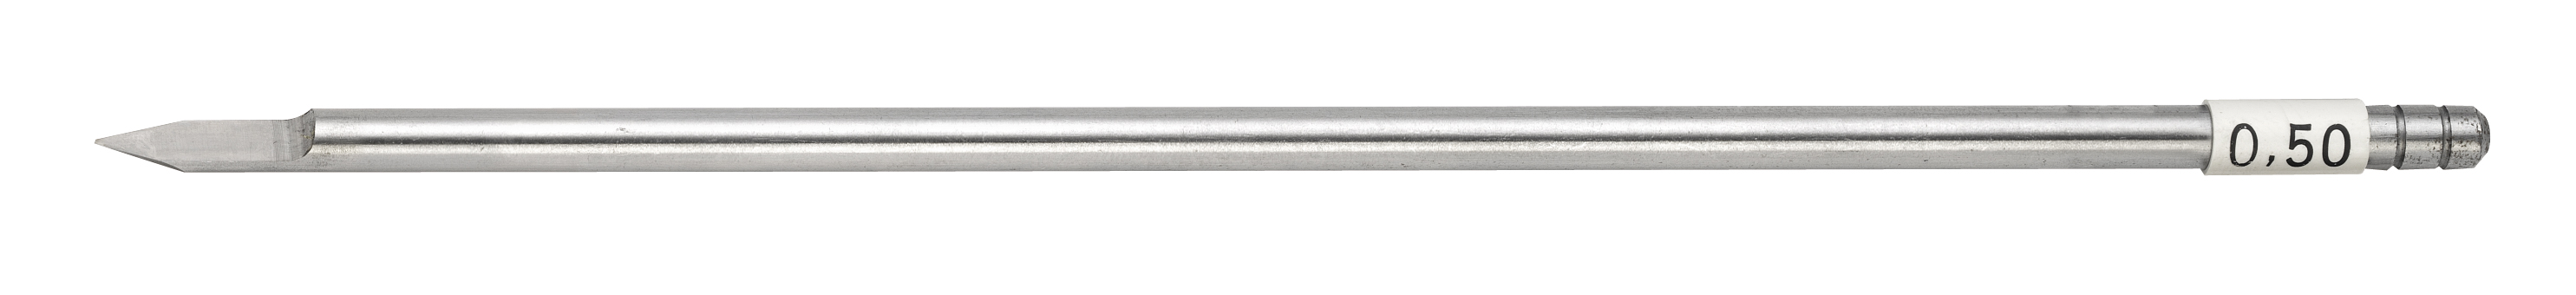 HSS cutter, shaft dia. 4.36 mm, width 0.75 mm Gravograph